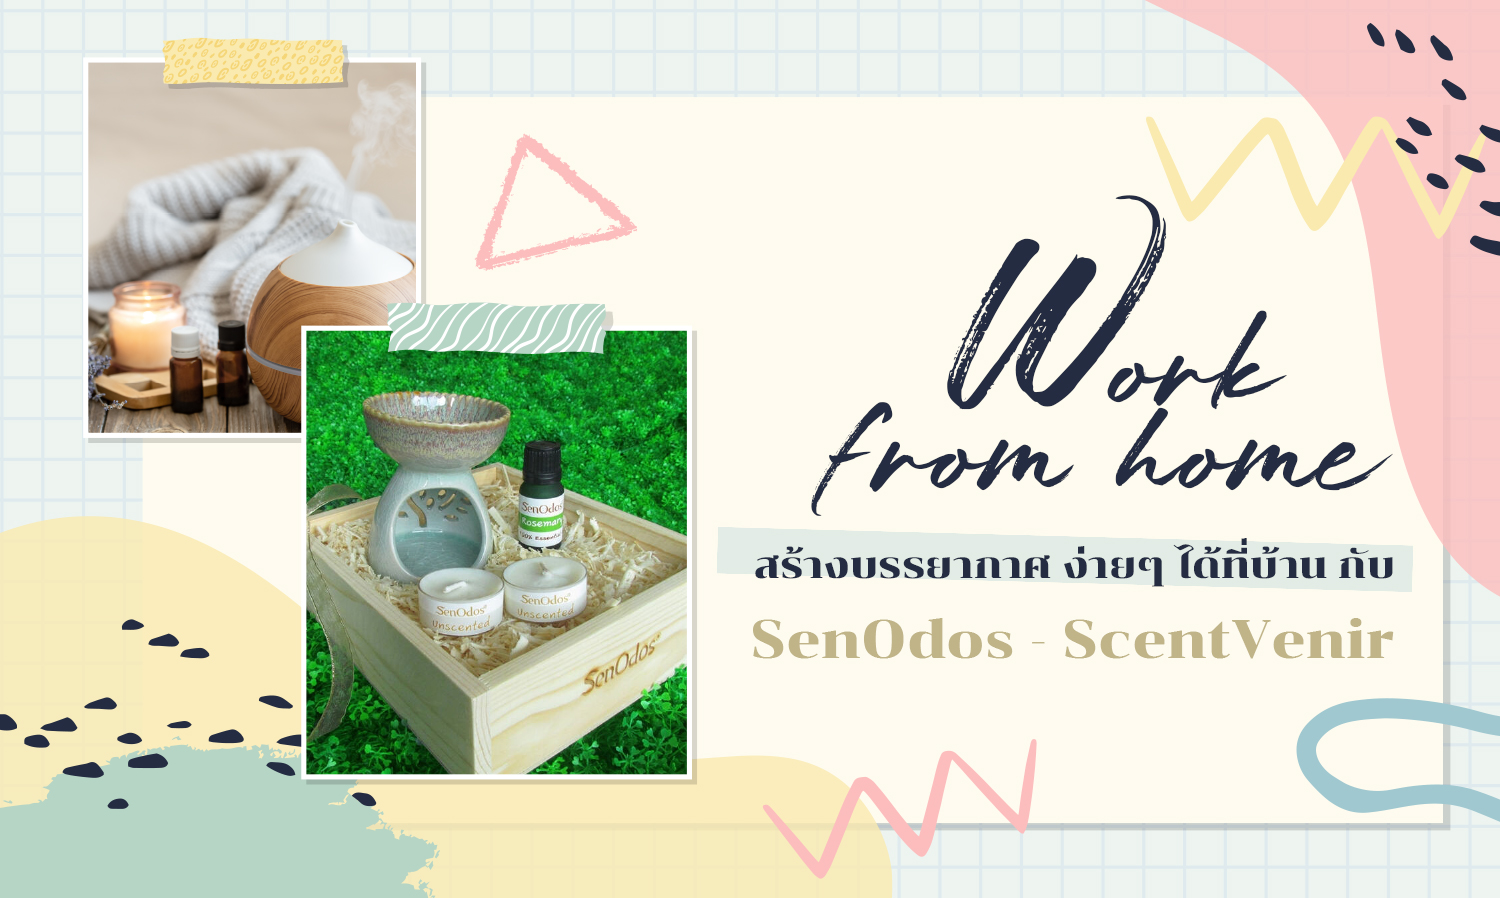 Work from home สร้างบรรยากาศ ง่ายๆ ได้ที่บ้าน กับ SenOdos - ScentVenir